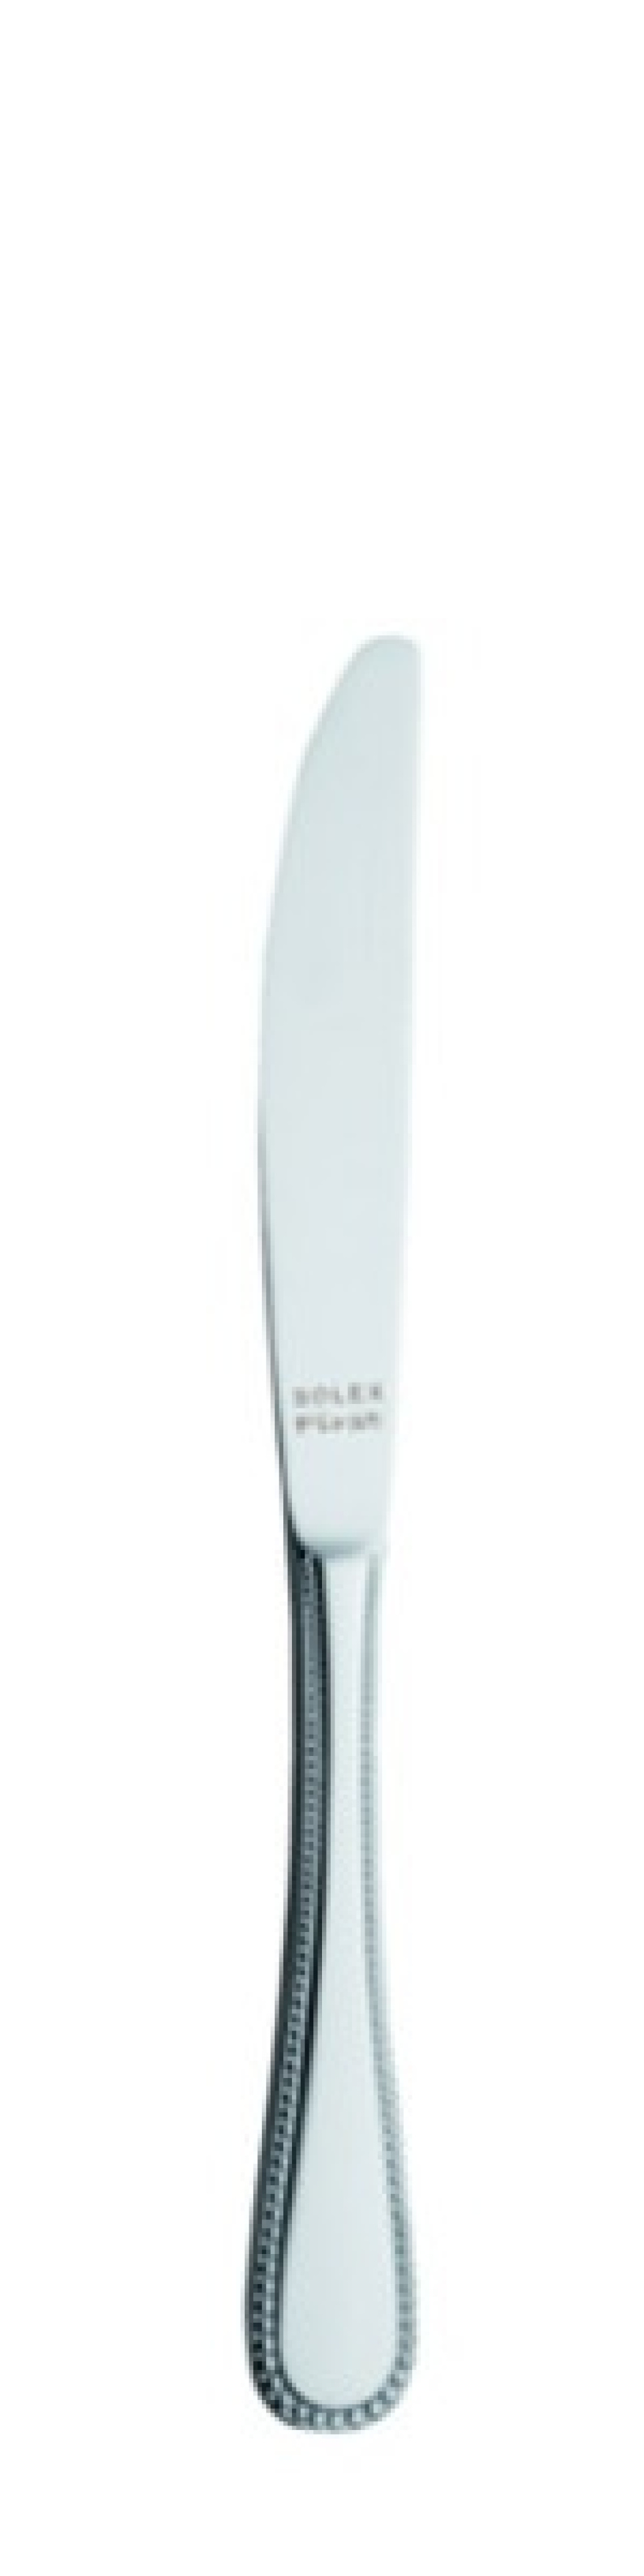 Perle Bordskniv 226 mm - Solex i gruppen Dukning / Bestick / Knivar hos KitchenLab (1284-21422)